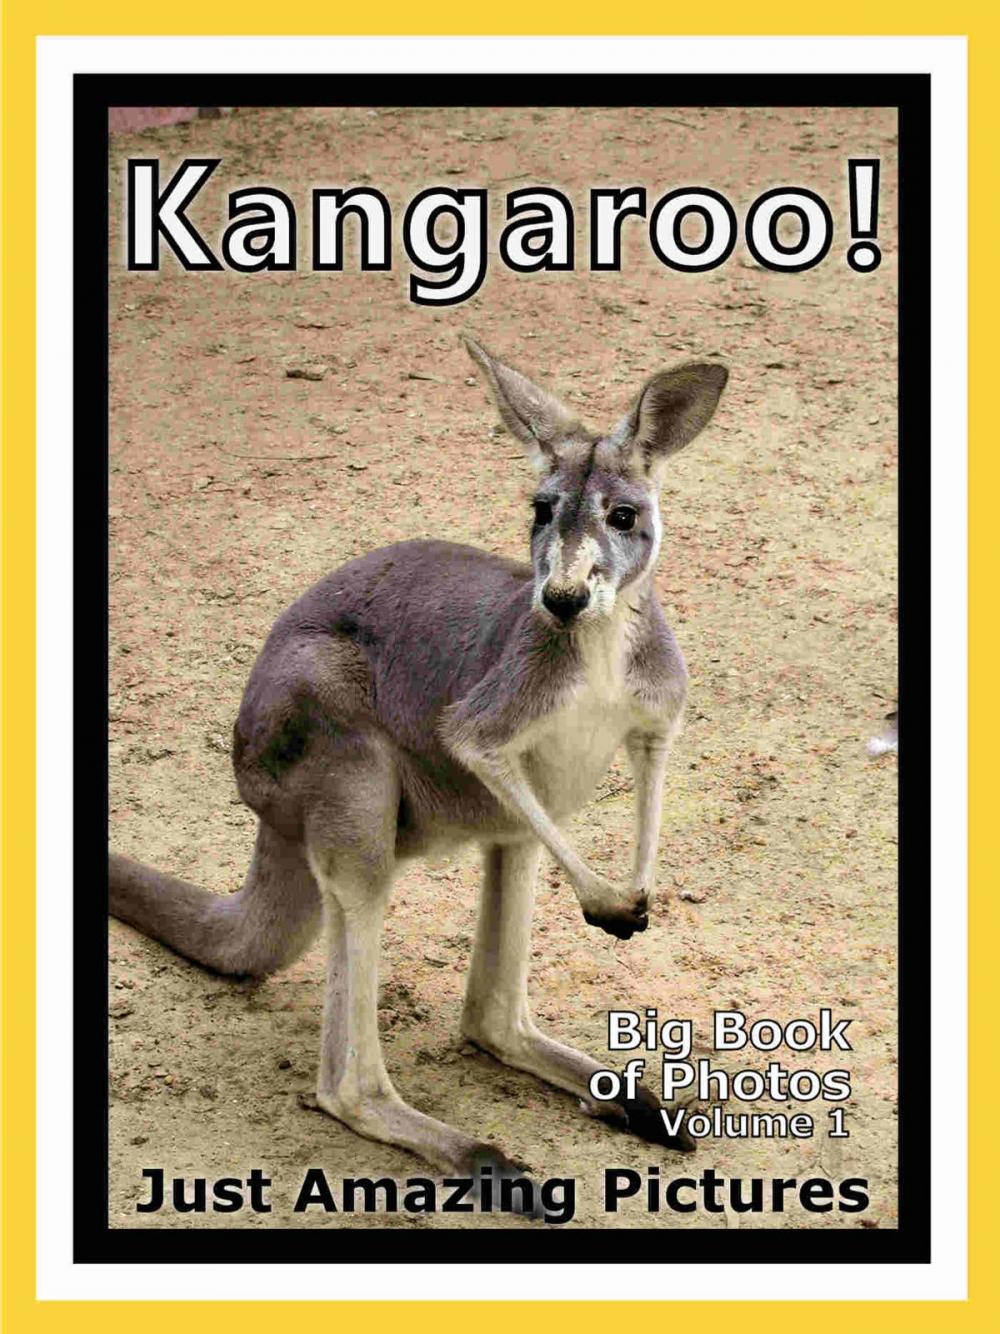 Big bigCover of Just Kangaroo Photos! Big Book of Photographs & Pictures of Kangaroos, Vol. 1